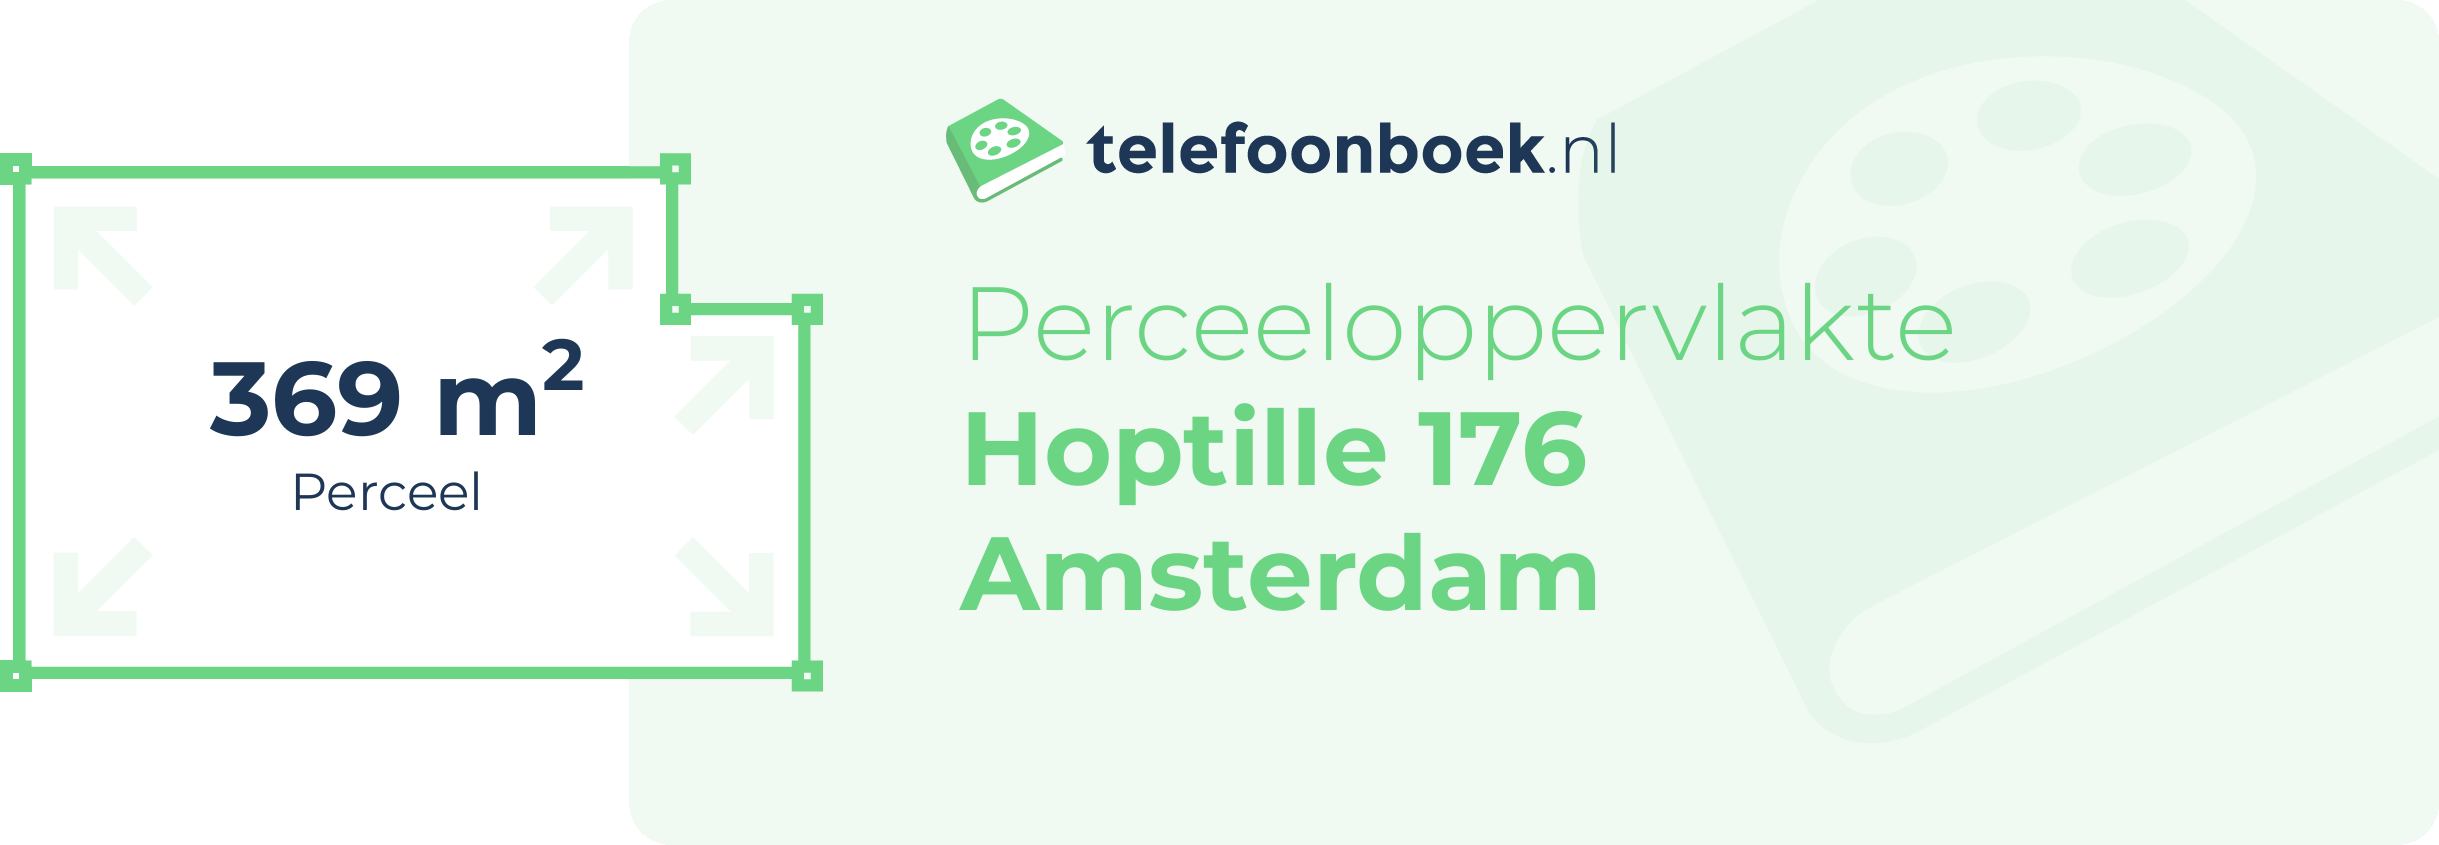 Perceeloppervlakte Hoptille 176 Amsterdam